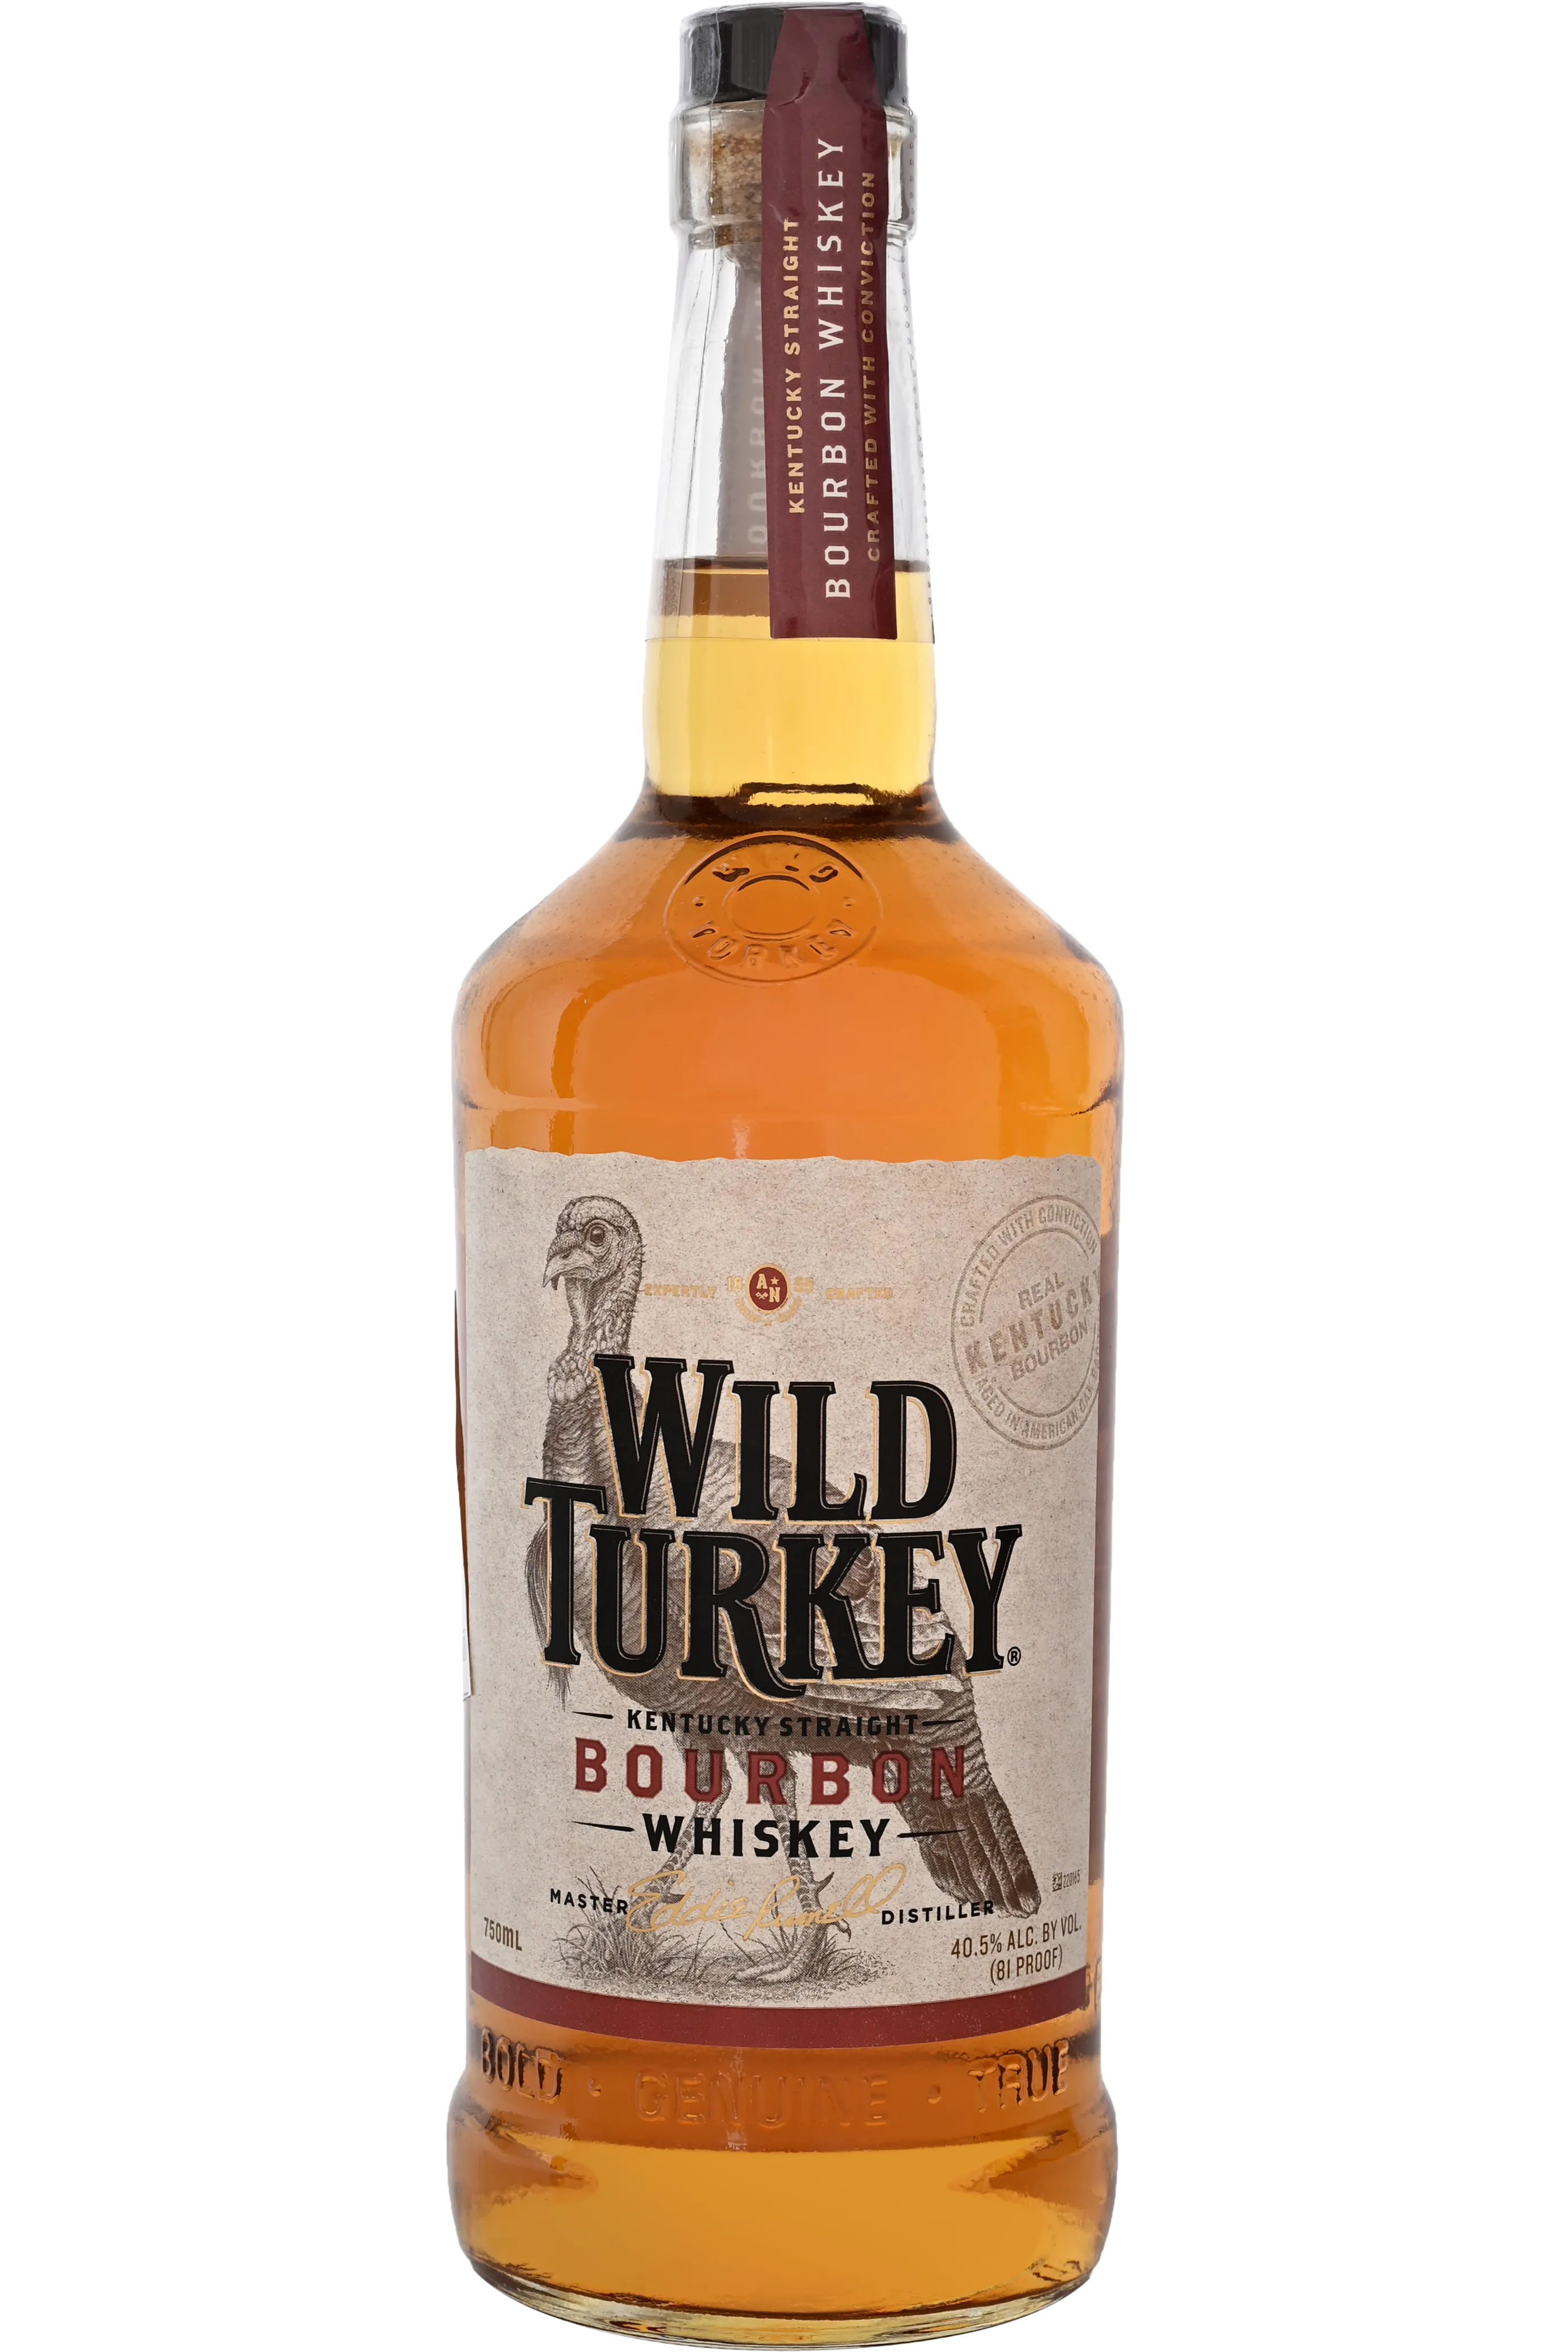 Buy Wild Turkey Kentucky Straight Bourbon Whisky Available in 750 ml